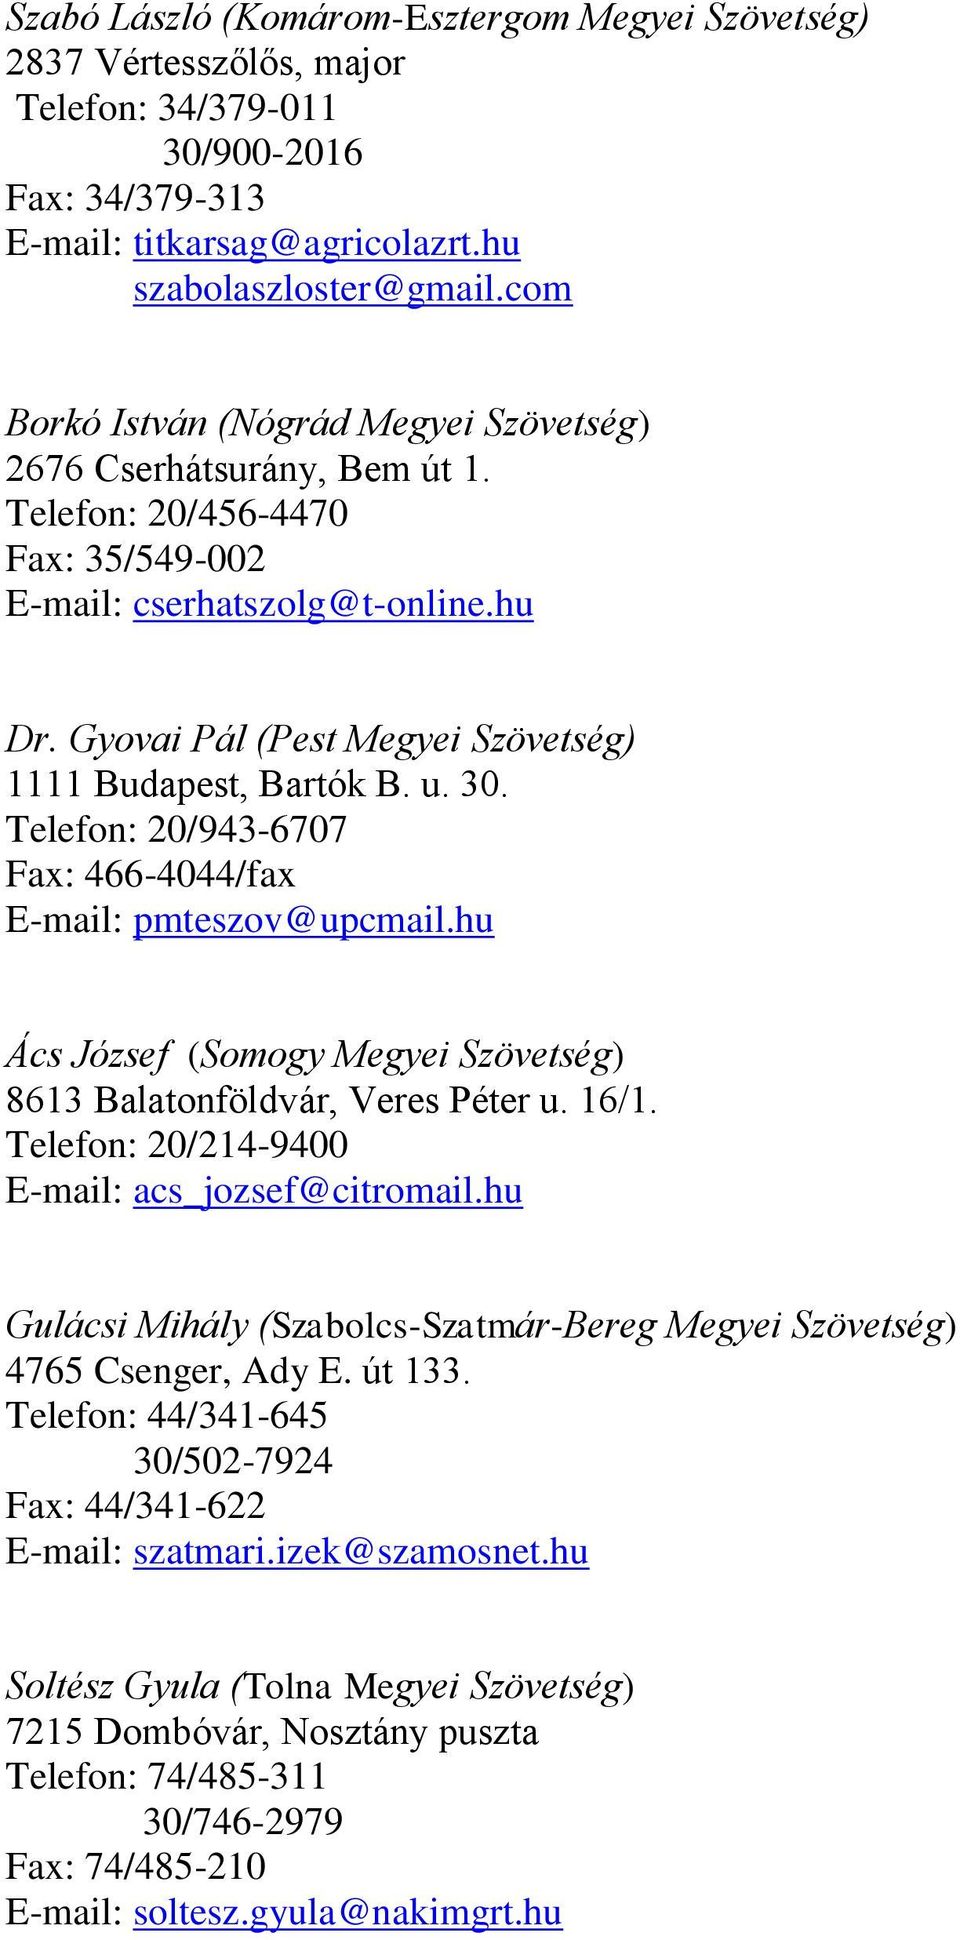 Gyovai Pál (Pest Megyei Szövetség) 1111 Budapest, Bartók B. u. 30. Telefon: 20/943-6707 Fax: 466-4044/fax E-mail: pmteszov@upcmail.